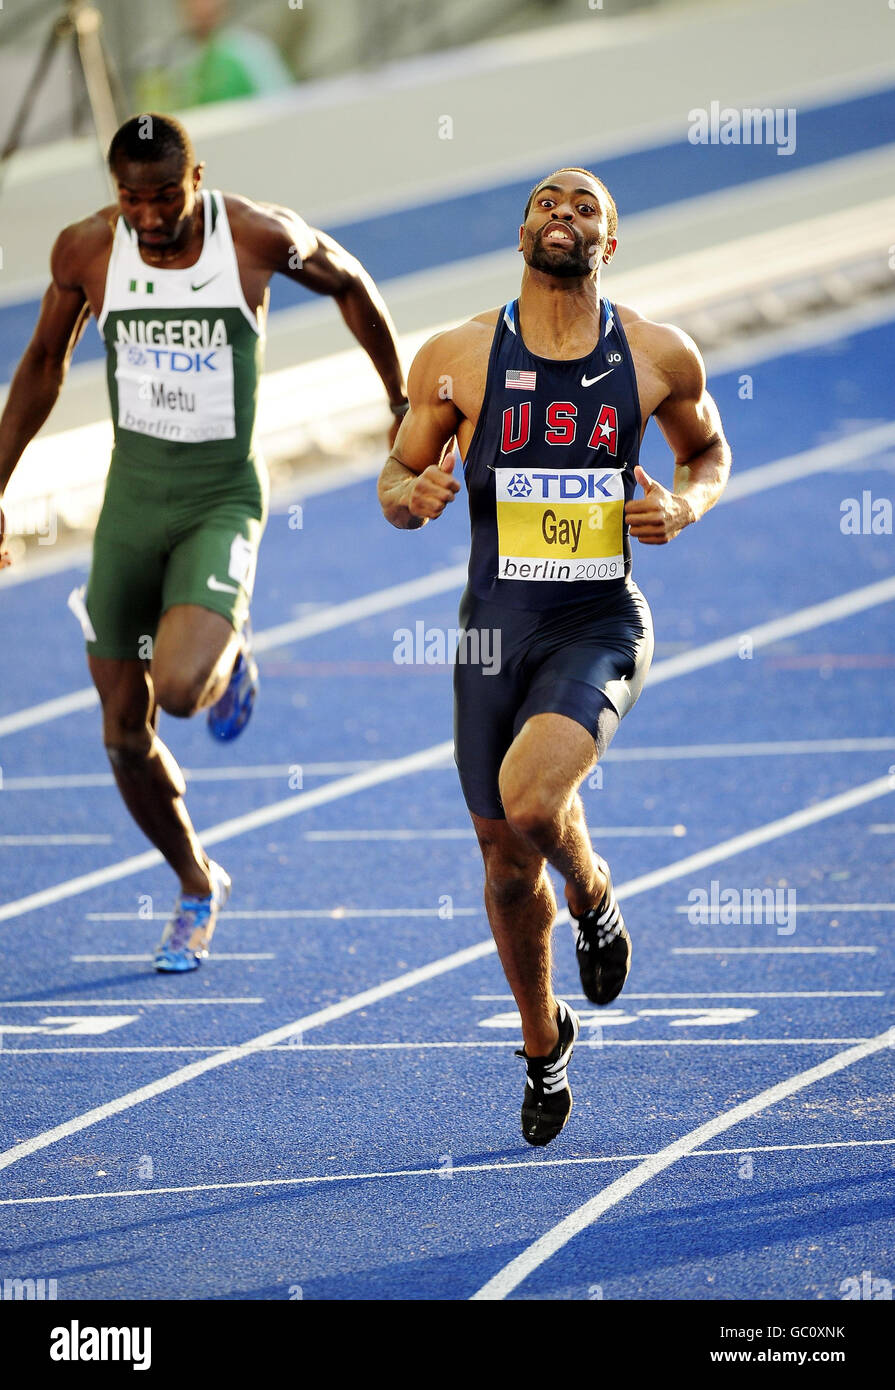 Tyson gay des États-Unis remporte sa deuxième course au 100m masculin lors des Championnats du monde de l'IAAF à l'Olympiastadion, Berlin. Banque D'Images